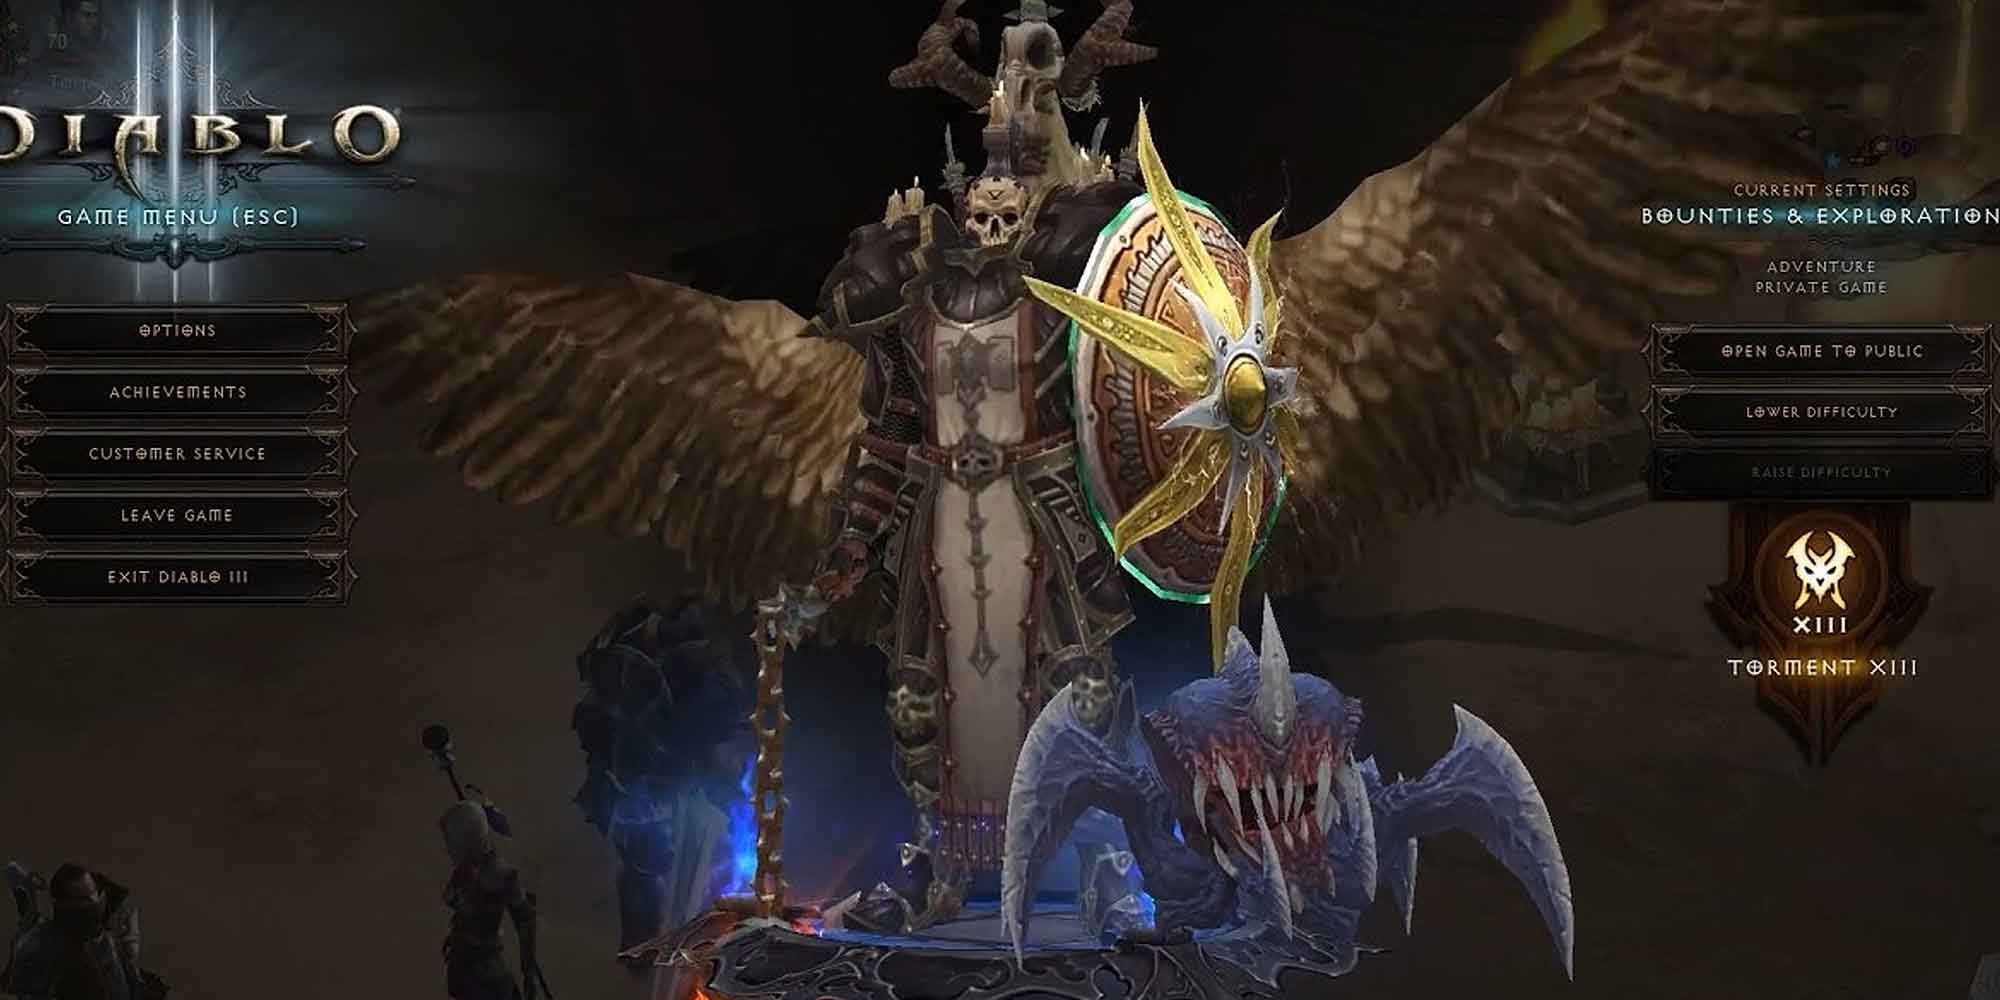 Seeker of the Light armor set in Diablo 3